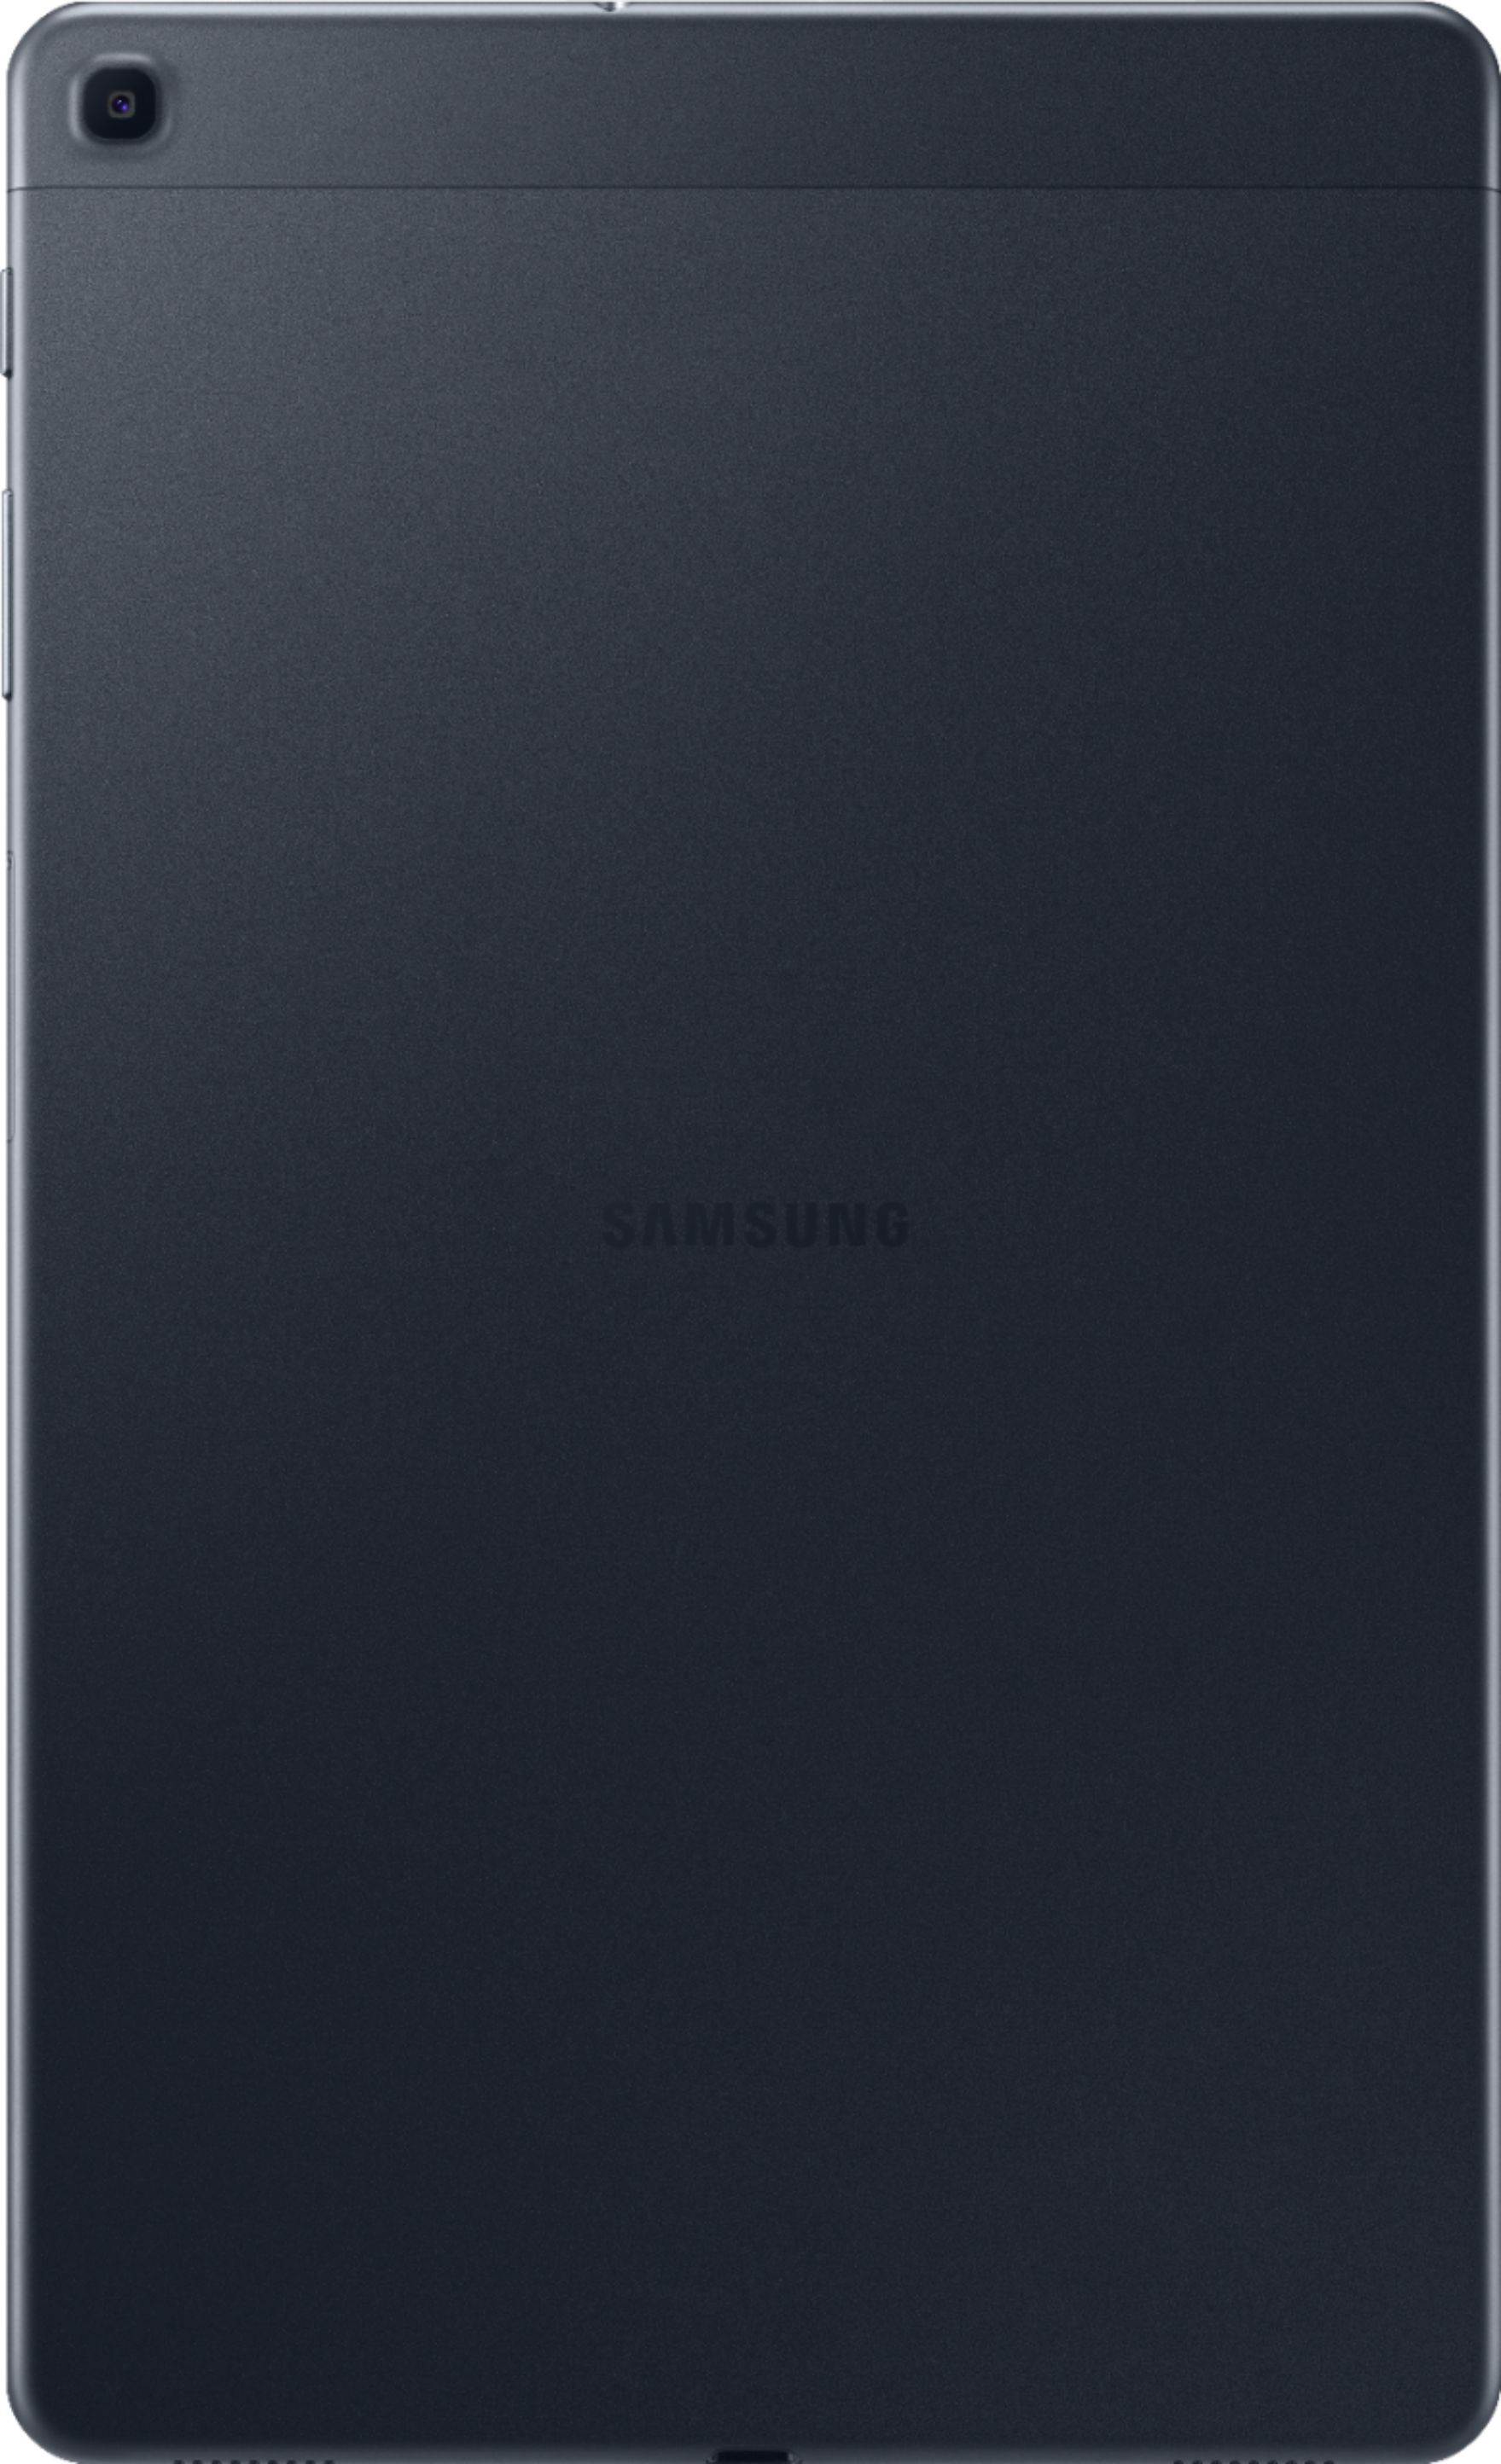 Gedachte Hoelahoep Veeg Best Buy: Samsung Galaxy Tab A (2019) 10.1" 32GB Black SM-T510NZKAXAR